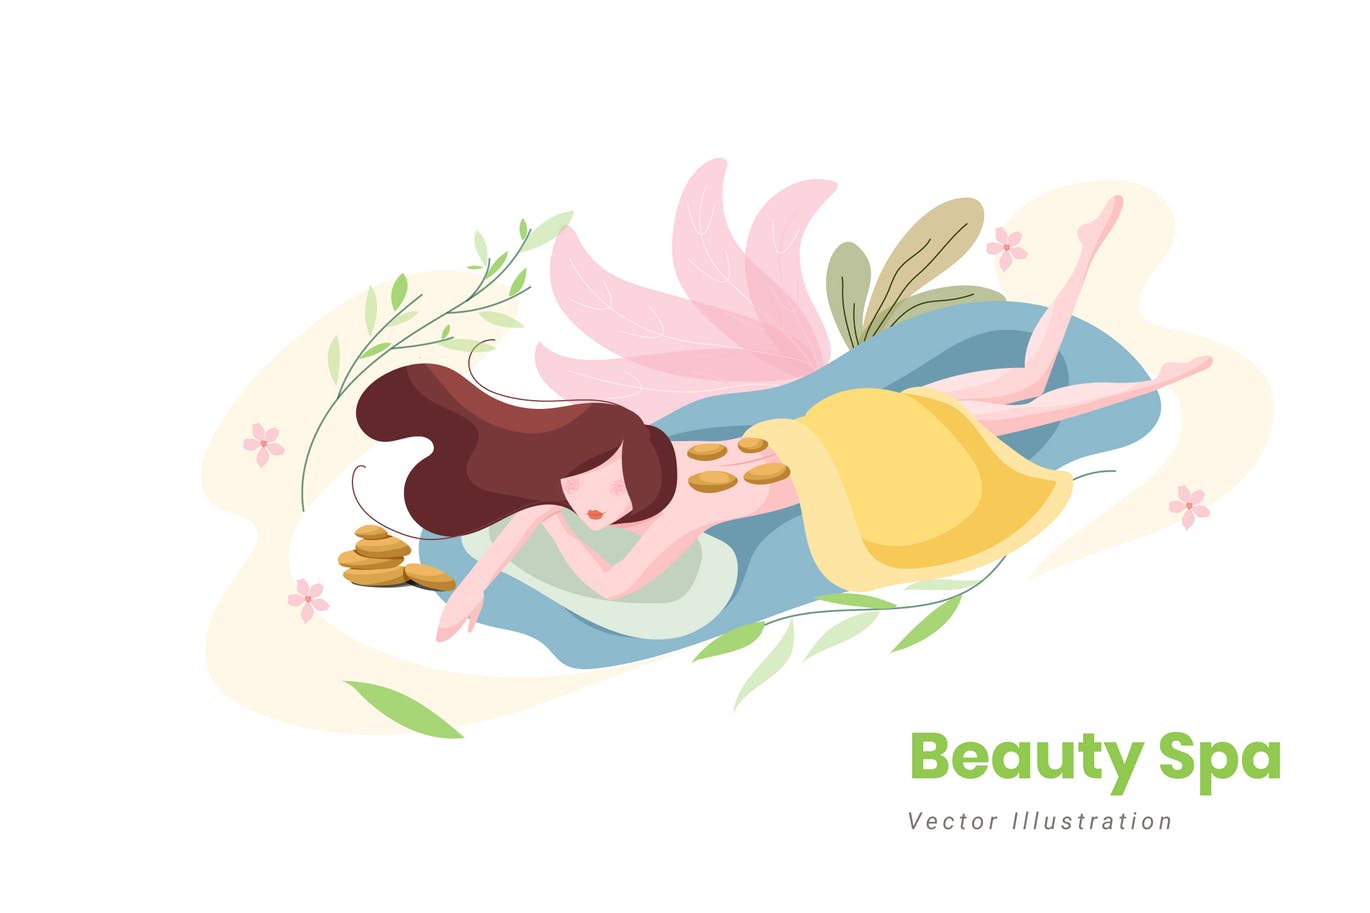 美容SPA主题矢量插画素材库精选设计素材v9 Beauty Spa Vector Illustration插图